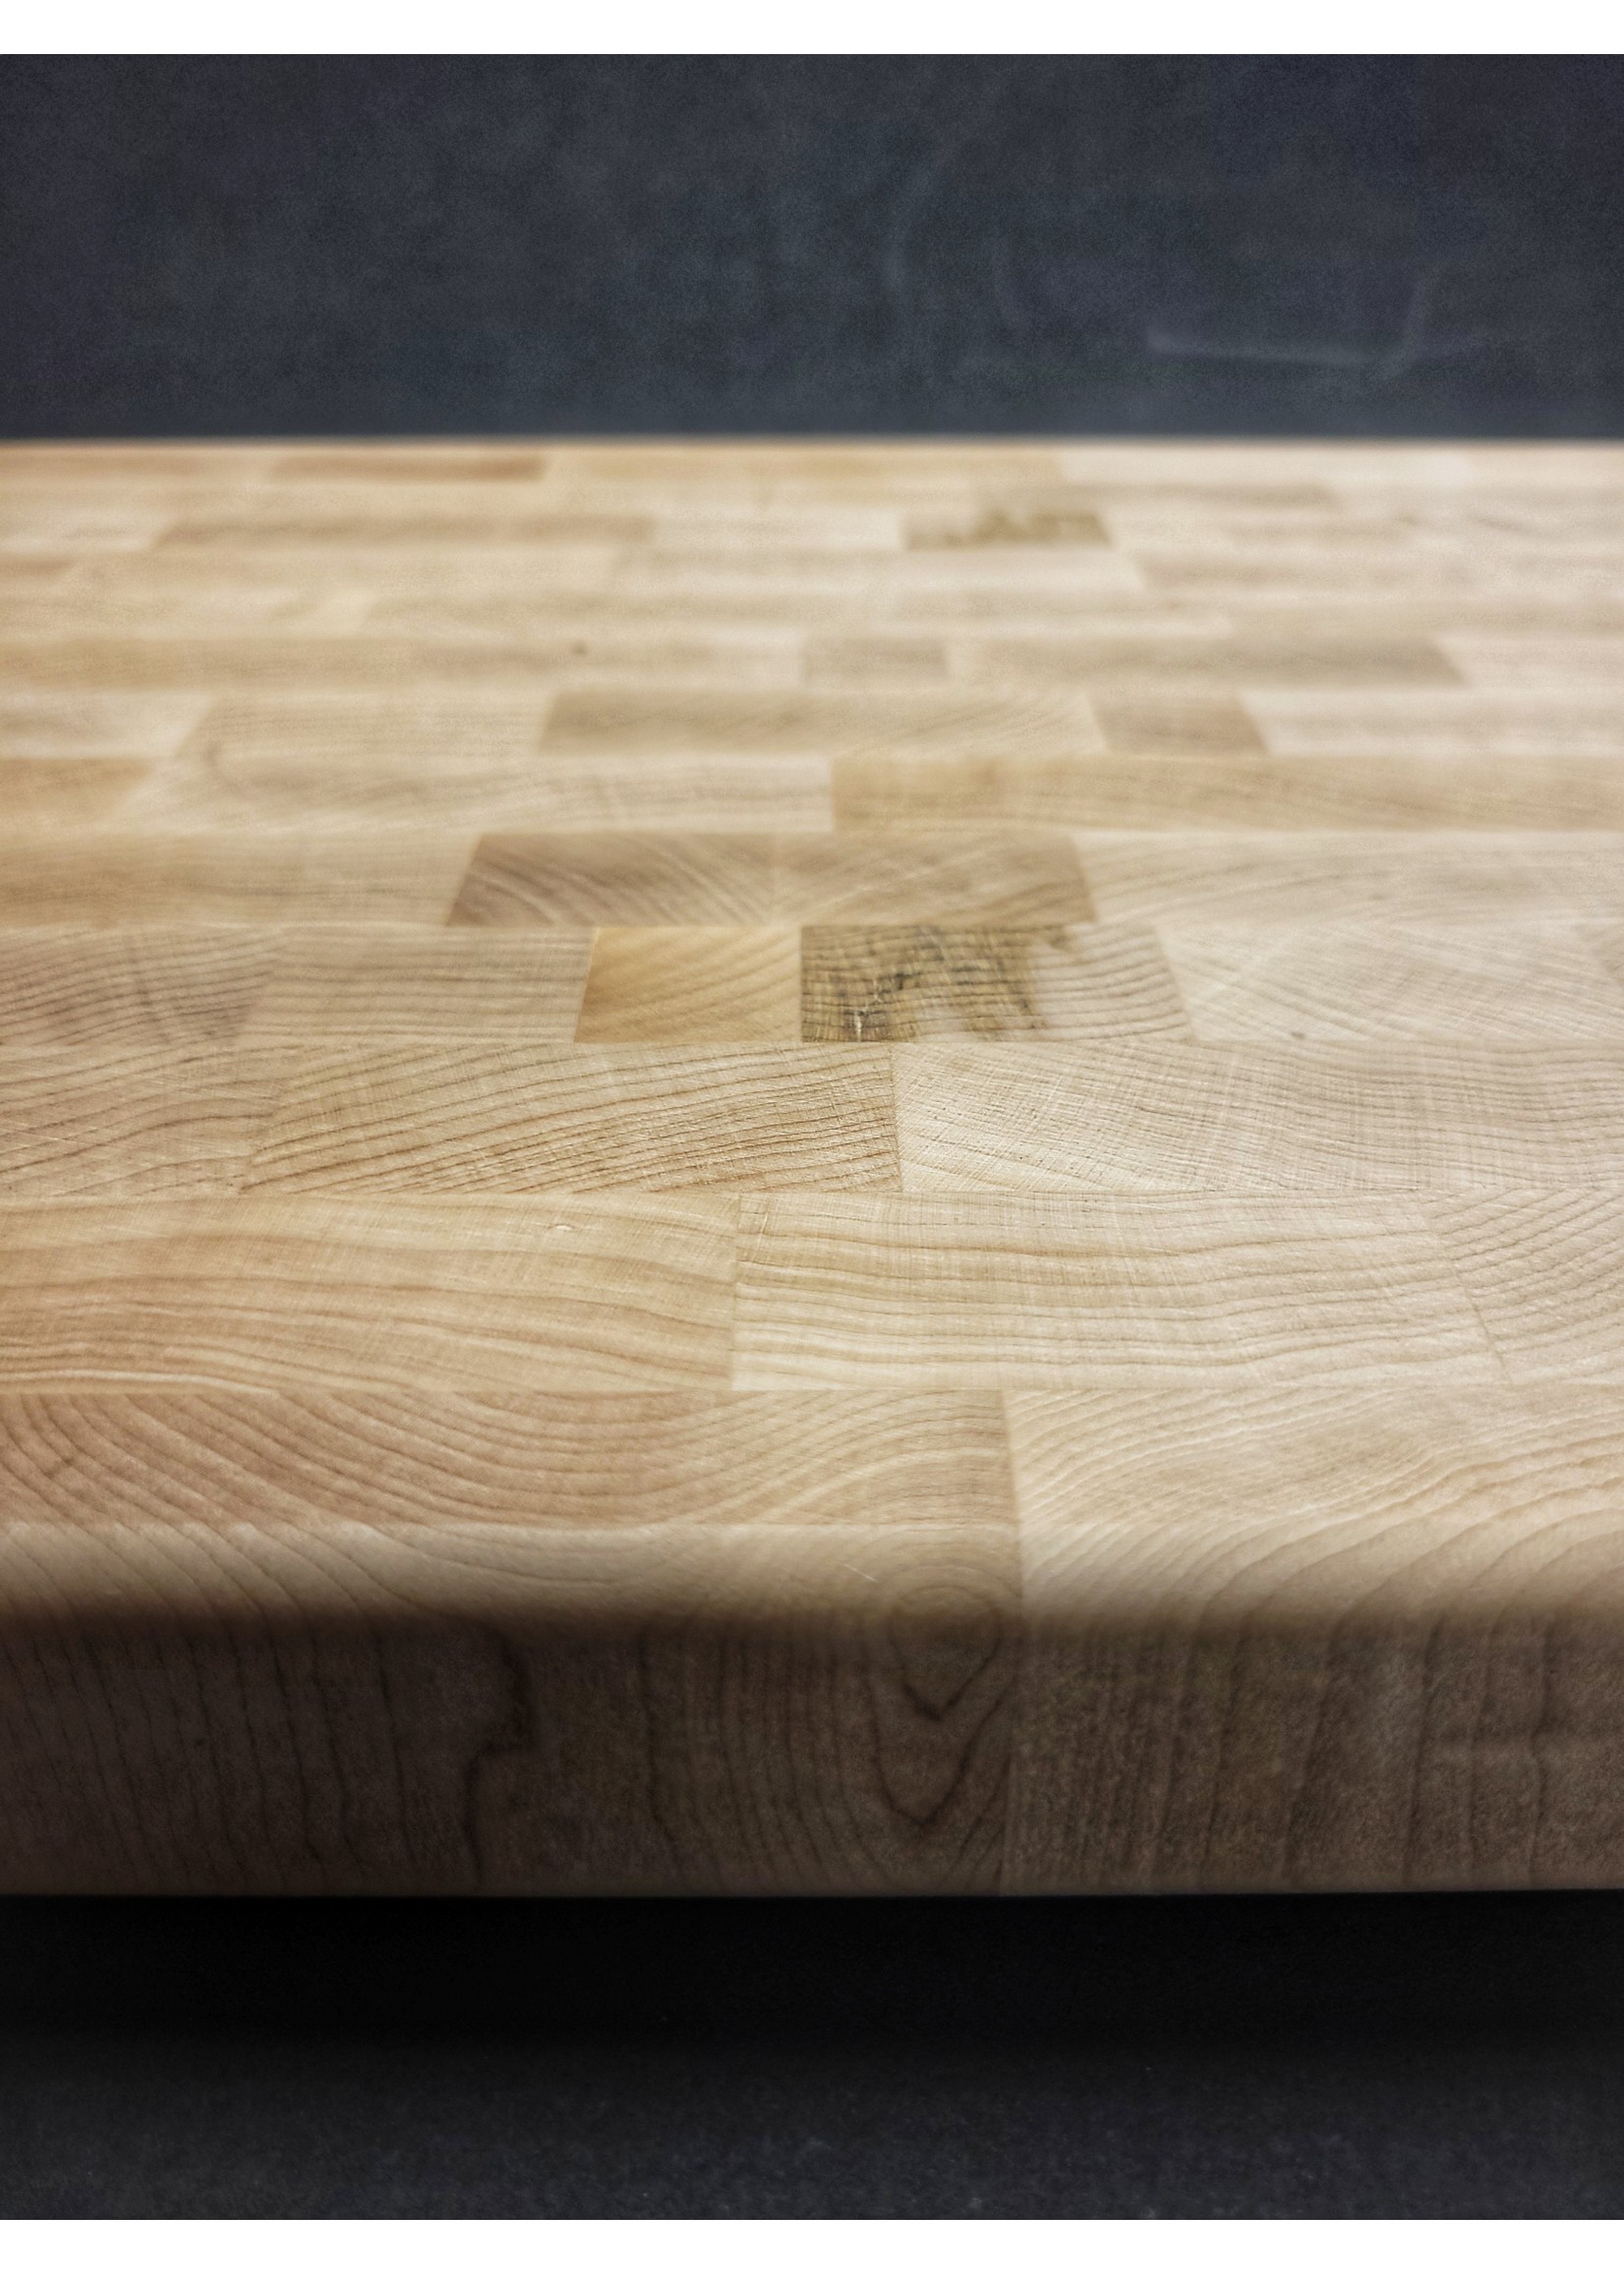 CKTG Large Maple Cutting Board 22 x 16 x 2“